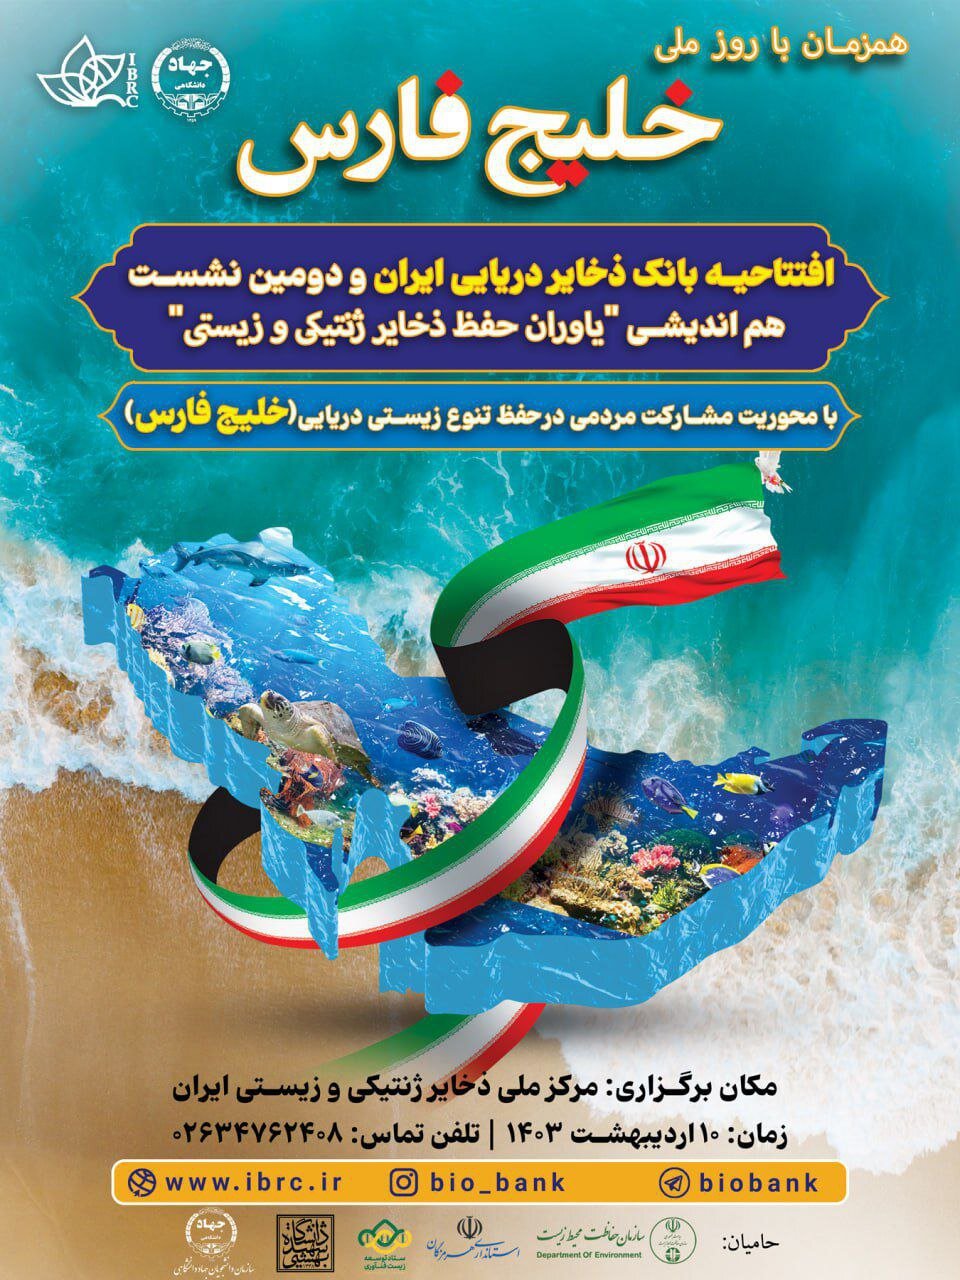 بانک ذخایر دریایی ایران افتتاح می شود